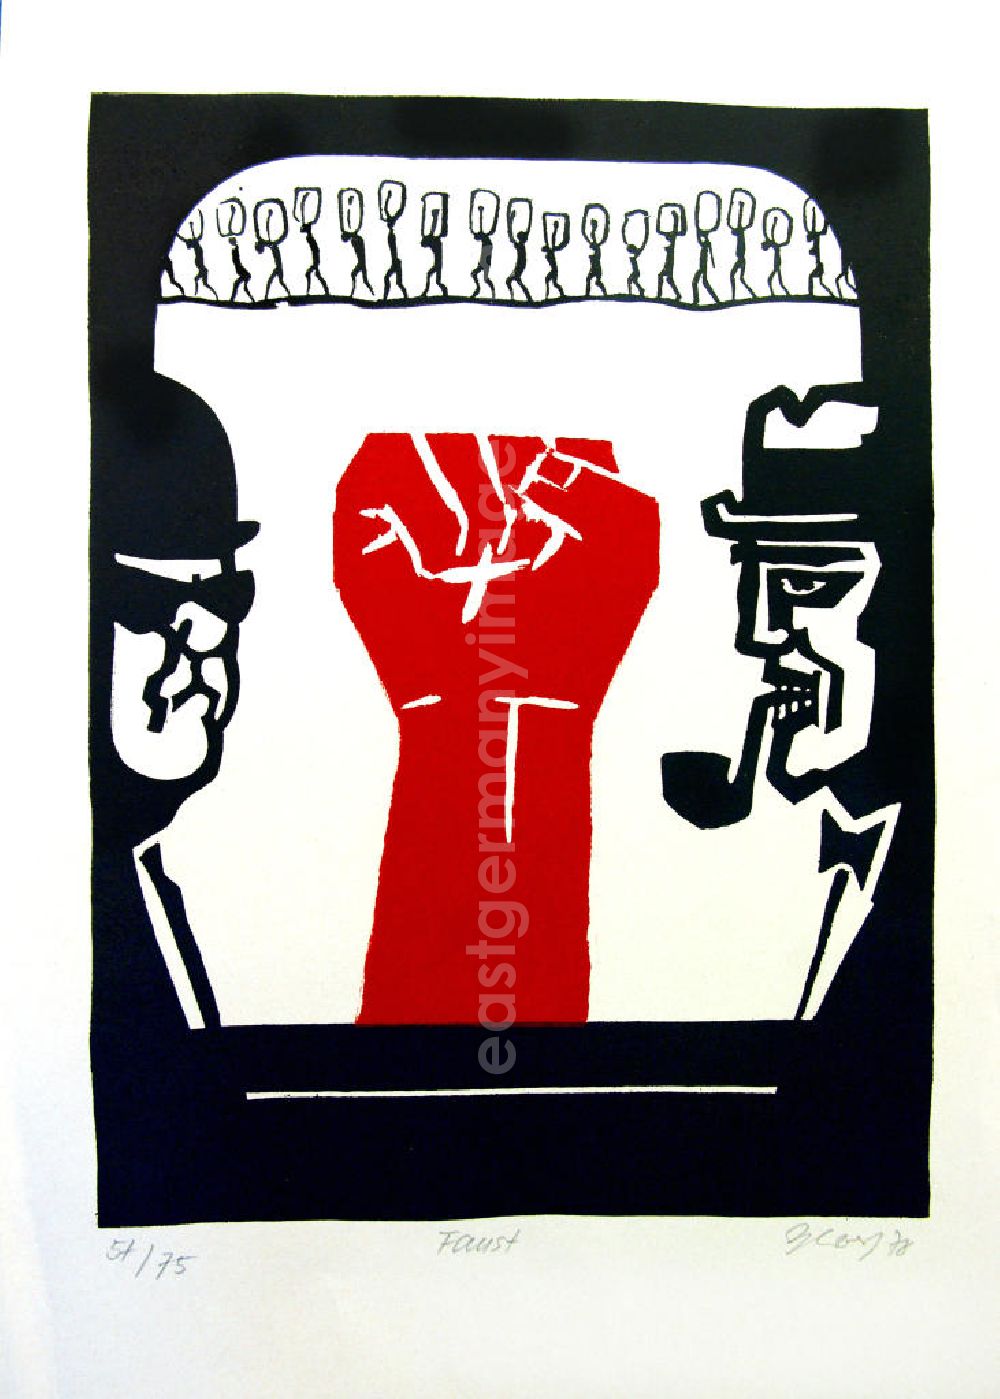 Berlin: Grafik von Herbert Sandberg Motiv 10 aus dem Zyklus Bilder zum Kommunistischen Manifest aus den Jahren 1967-72 mit 3